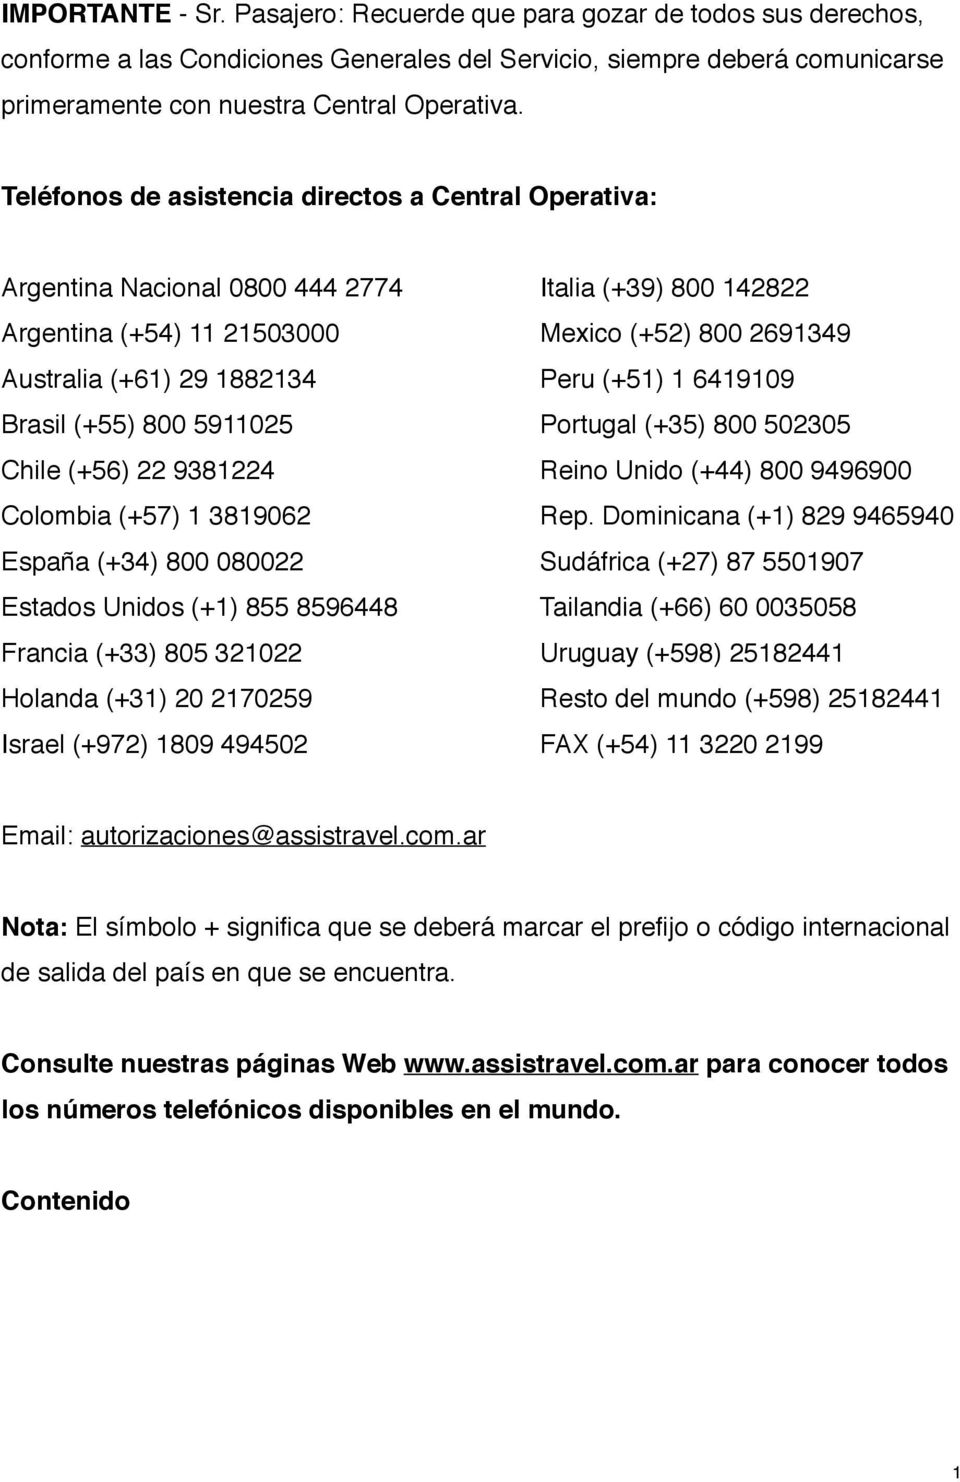 (+51) 1 6419109 Brasil (+55) 800 5911025 Portugal (+35) 800 502305 Chile (+56) 22 9381224 Reino Unido (+44) 800 9496900 Colombia (+57) 1 3819062 Rep.